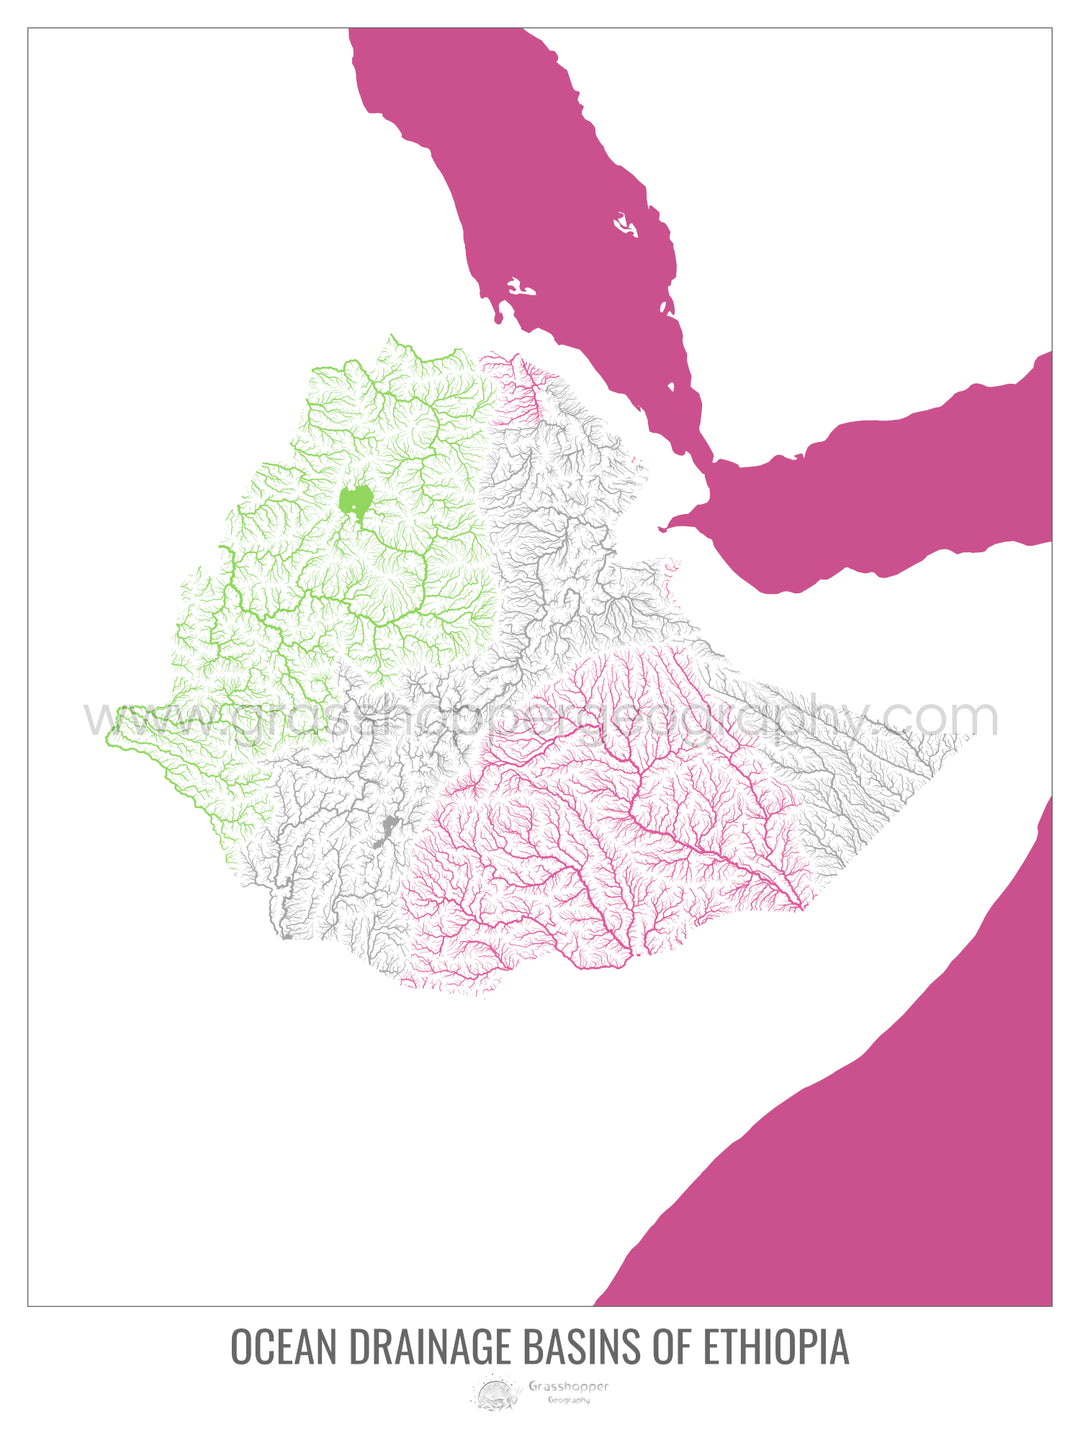 Éthiopie - Carte du bassin versant océanique, blanc v2 - Tirage d'art avec cintre